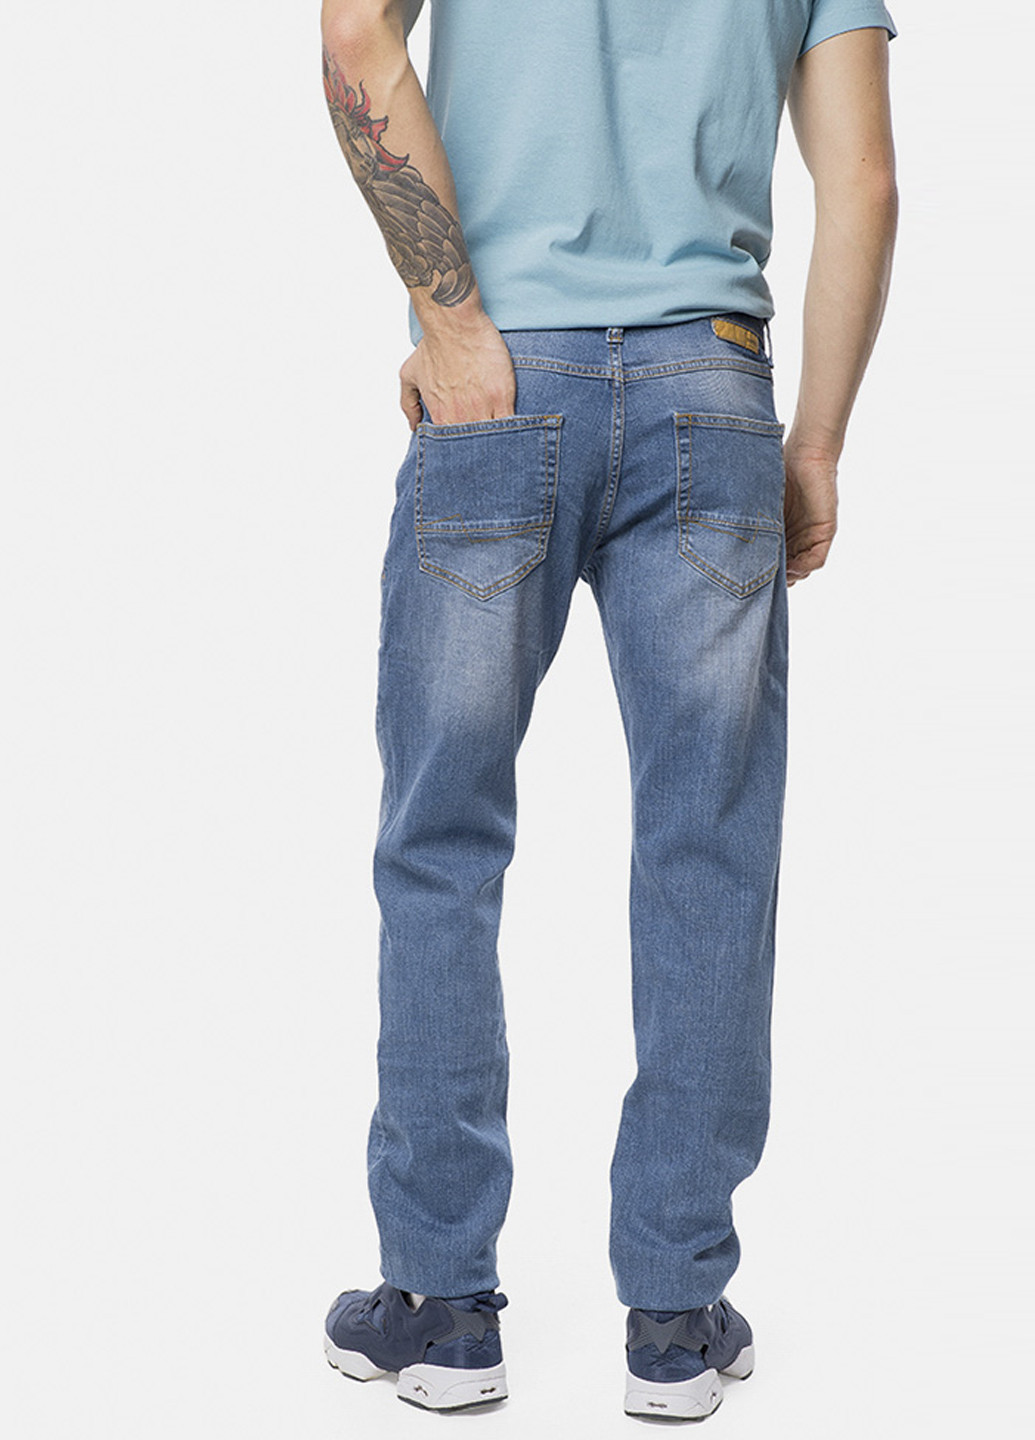 Джинси MR 520 середня талія однотонні сині джинсові